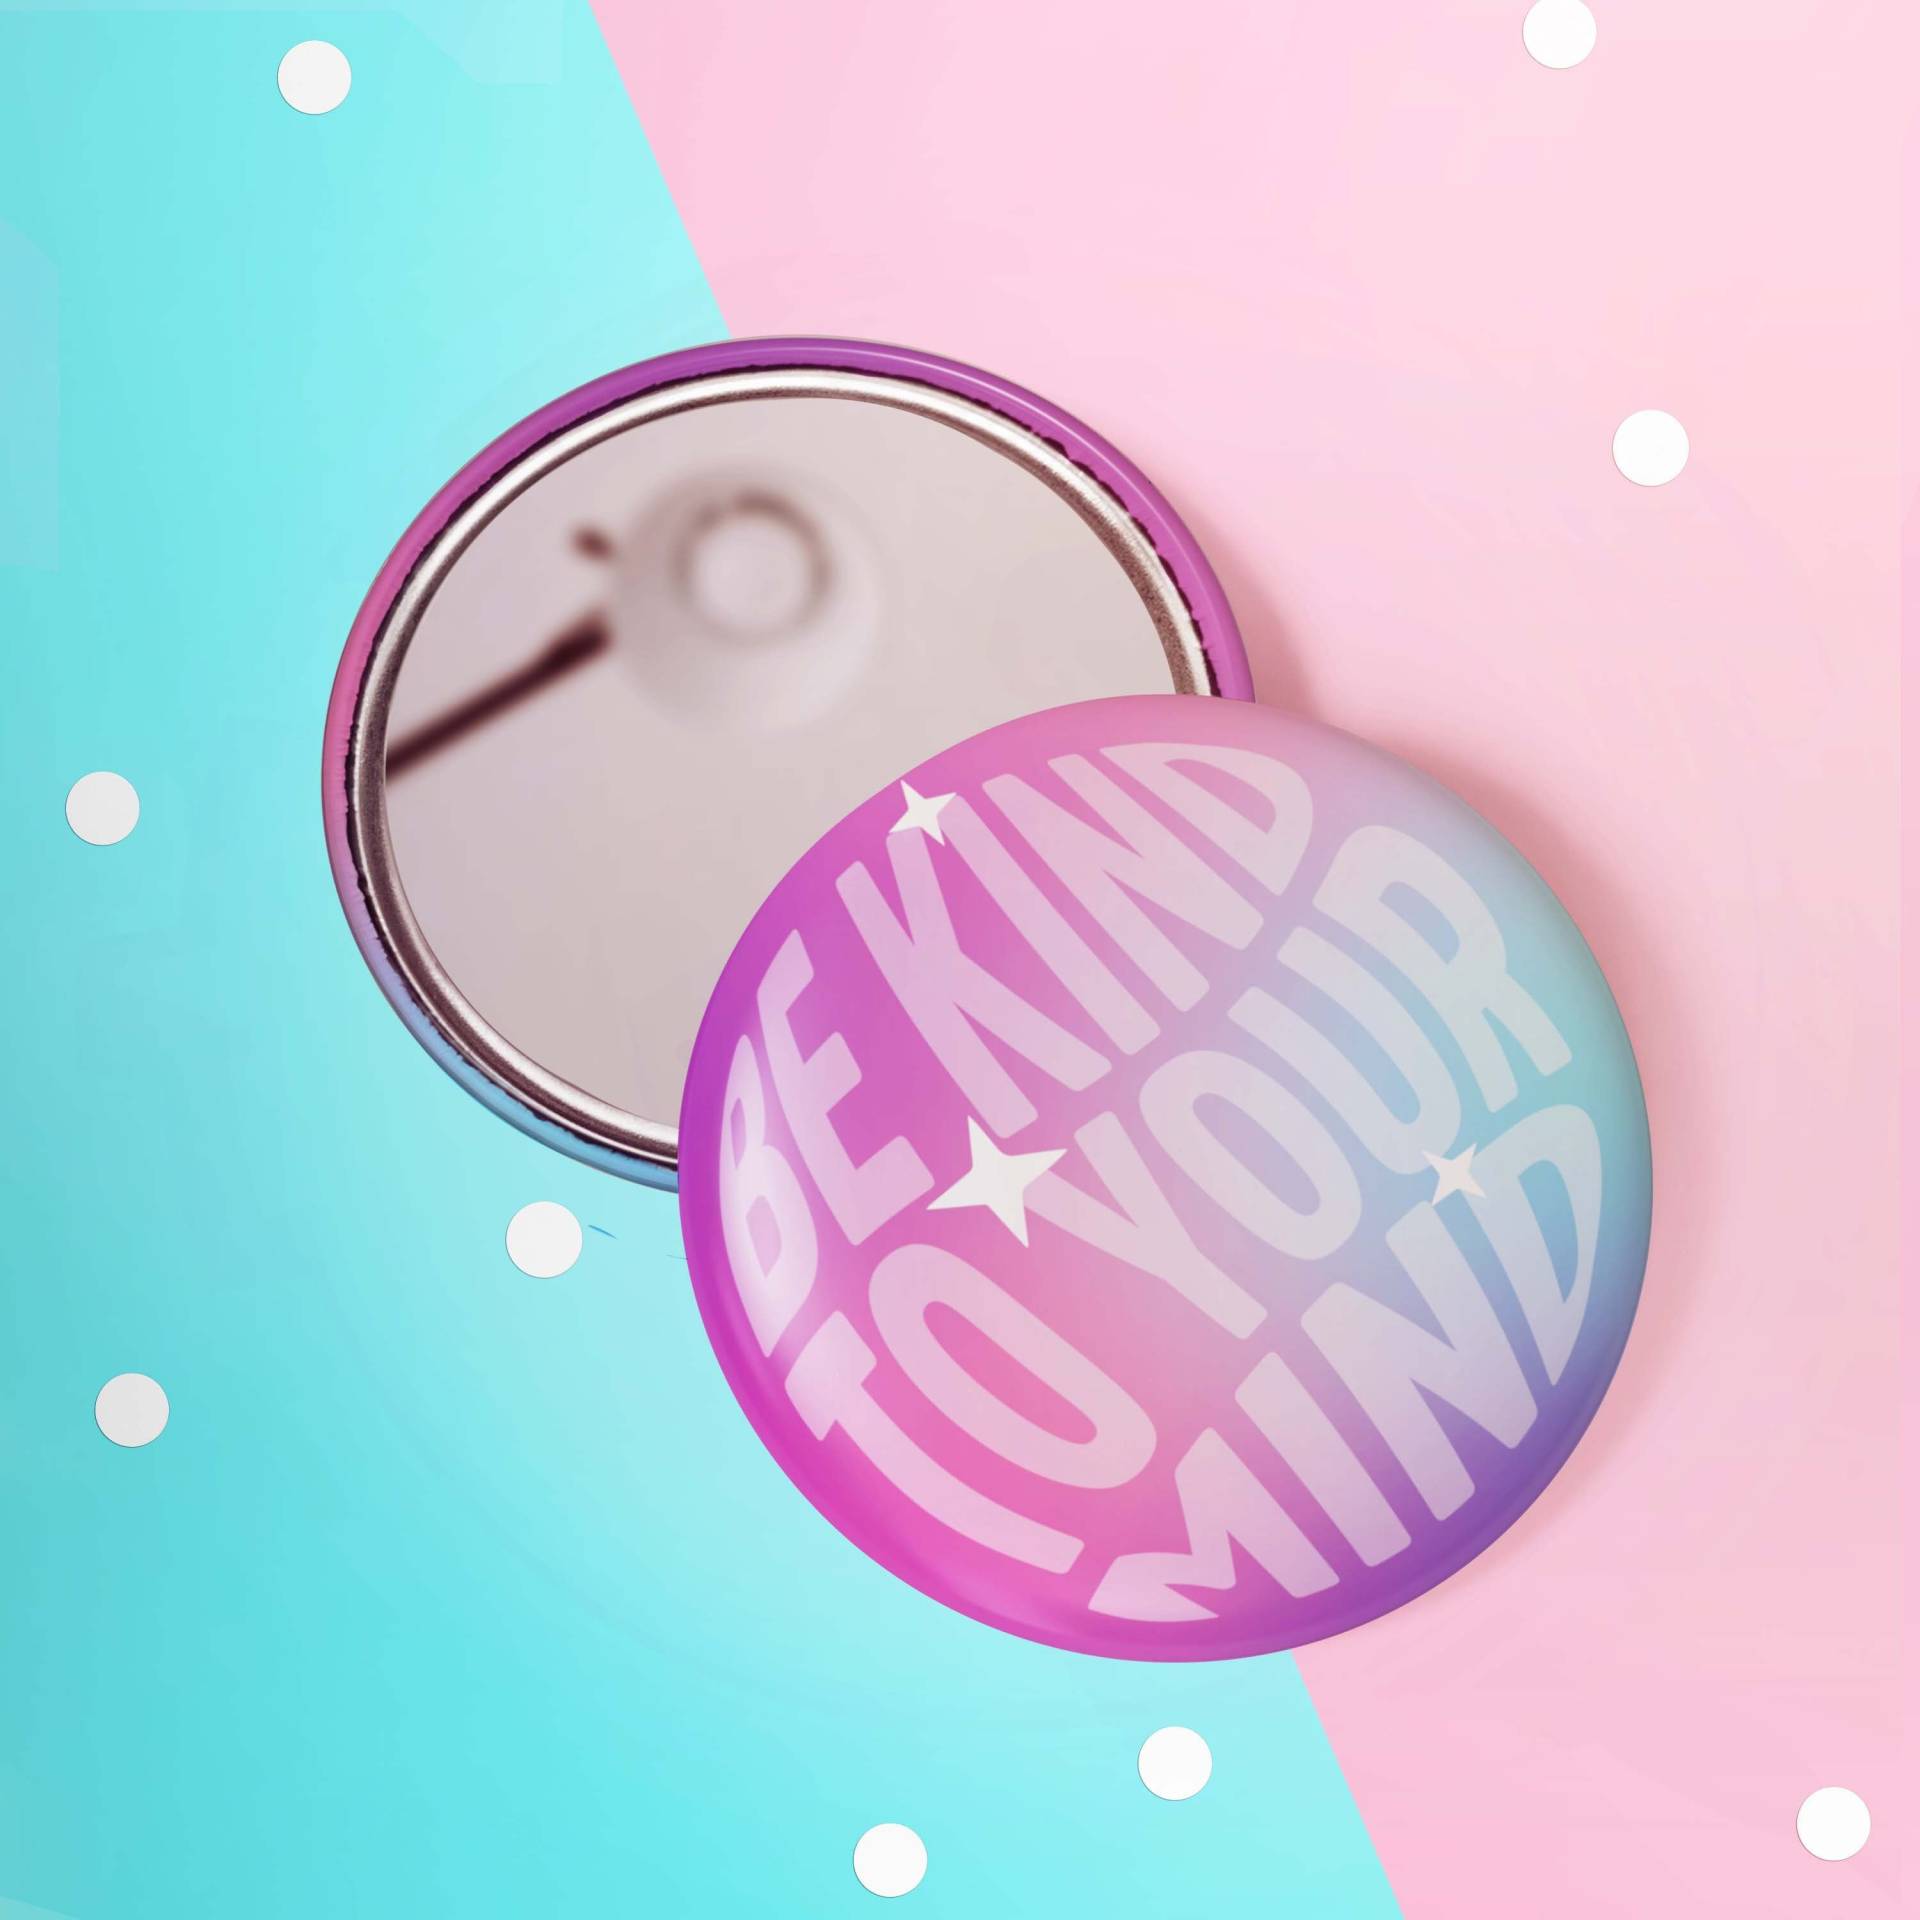 Be Kind To Your Mind - Positivität Affirmativ | Positive Affirmation 58mm Taschenspiegel Selbstpflege Geldbörse Spiegel von KuriousKatieDesigns